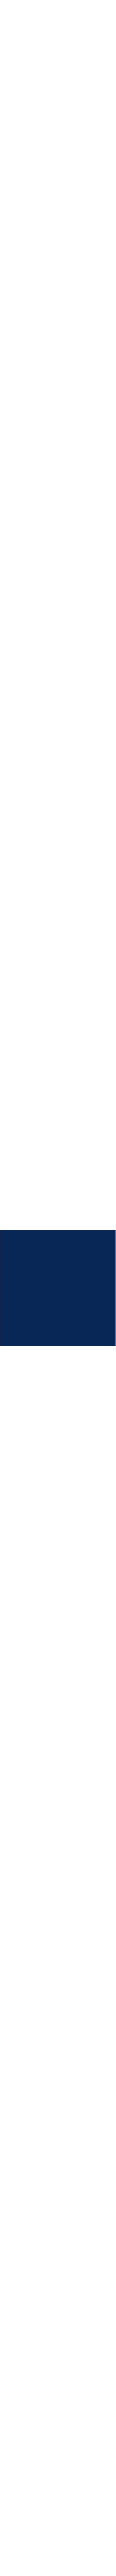 80.003 Bleu nuit en 0.61m (référence arrêtée) prix net